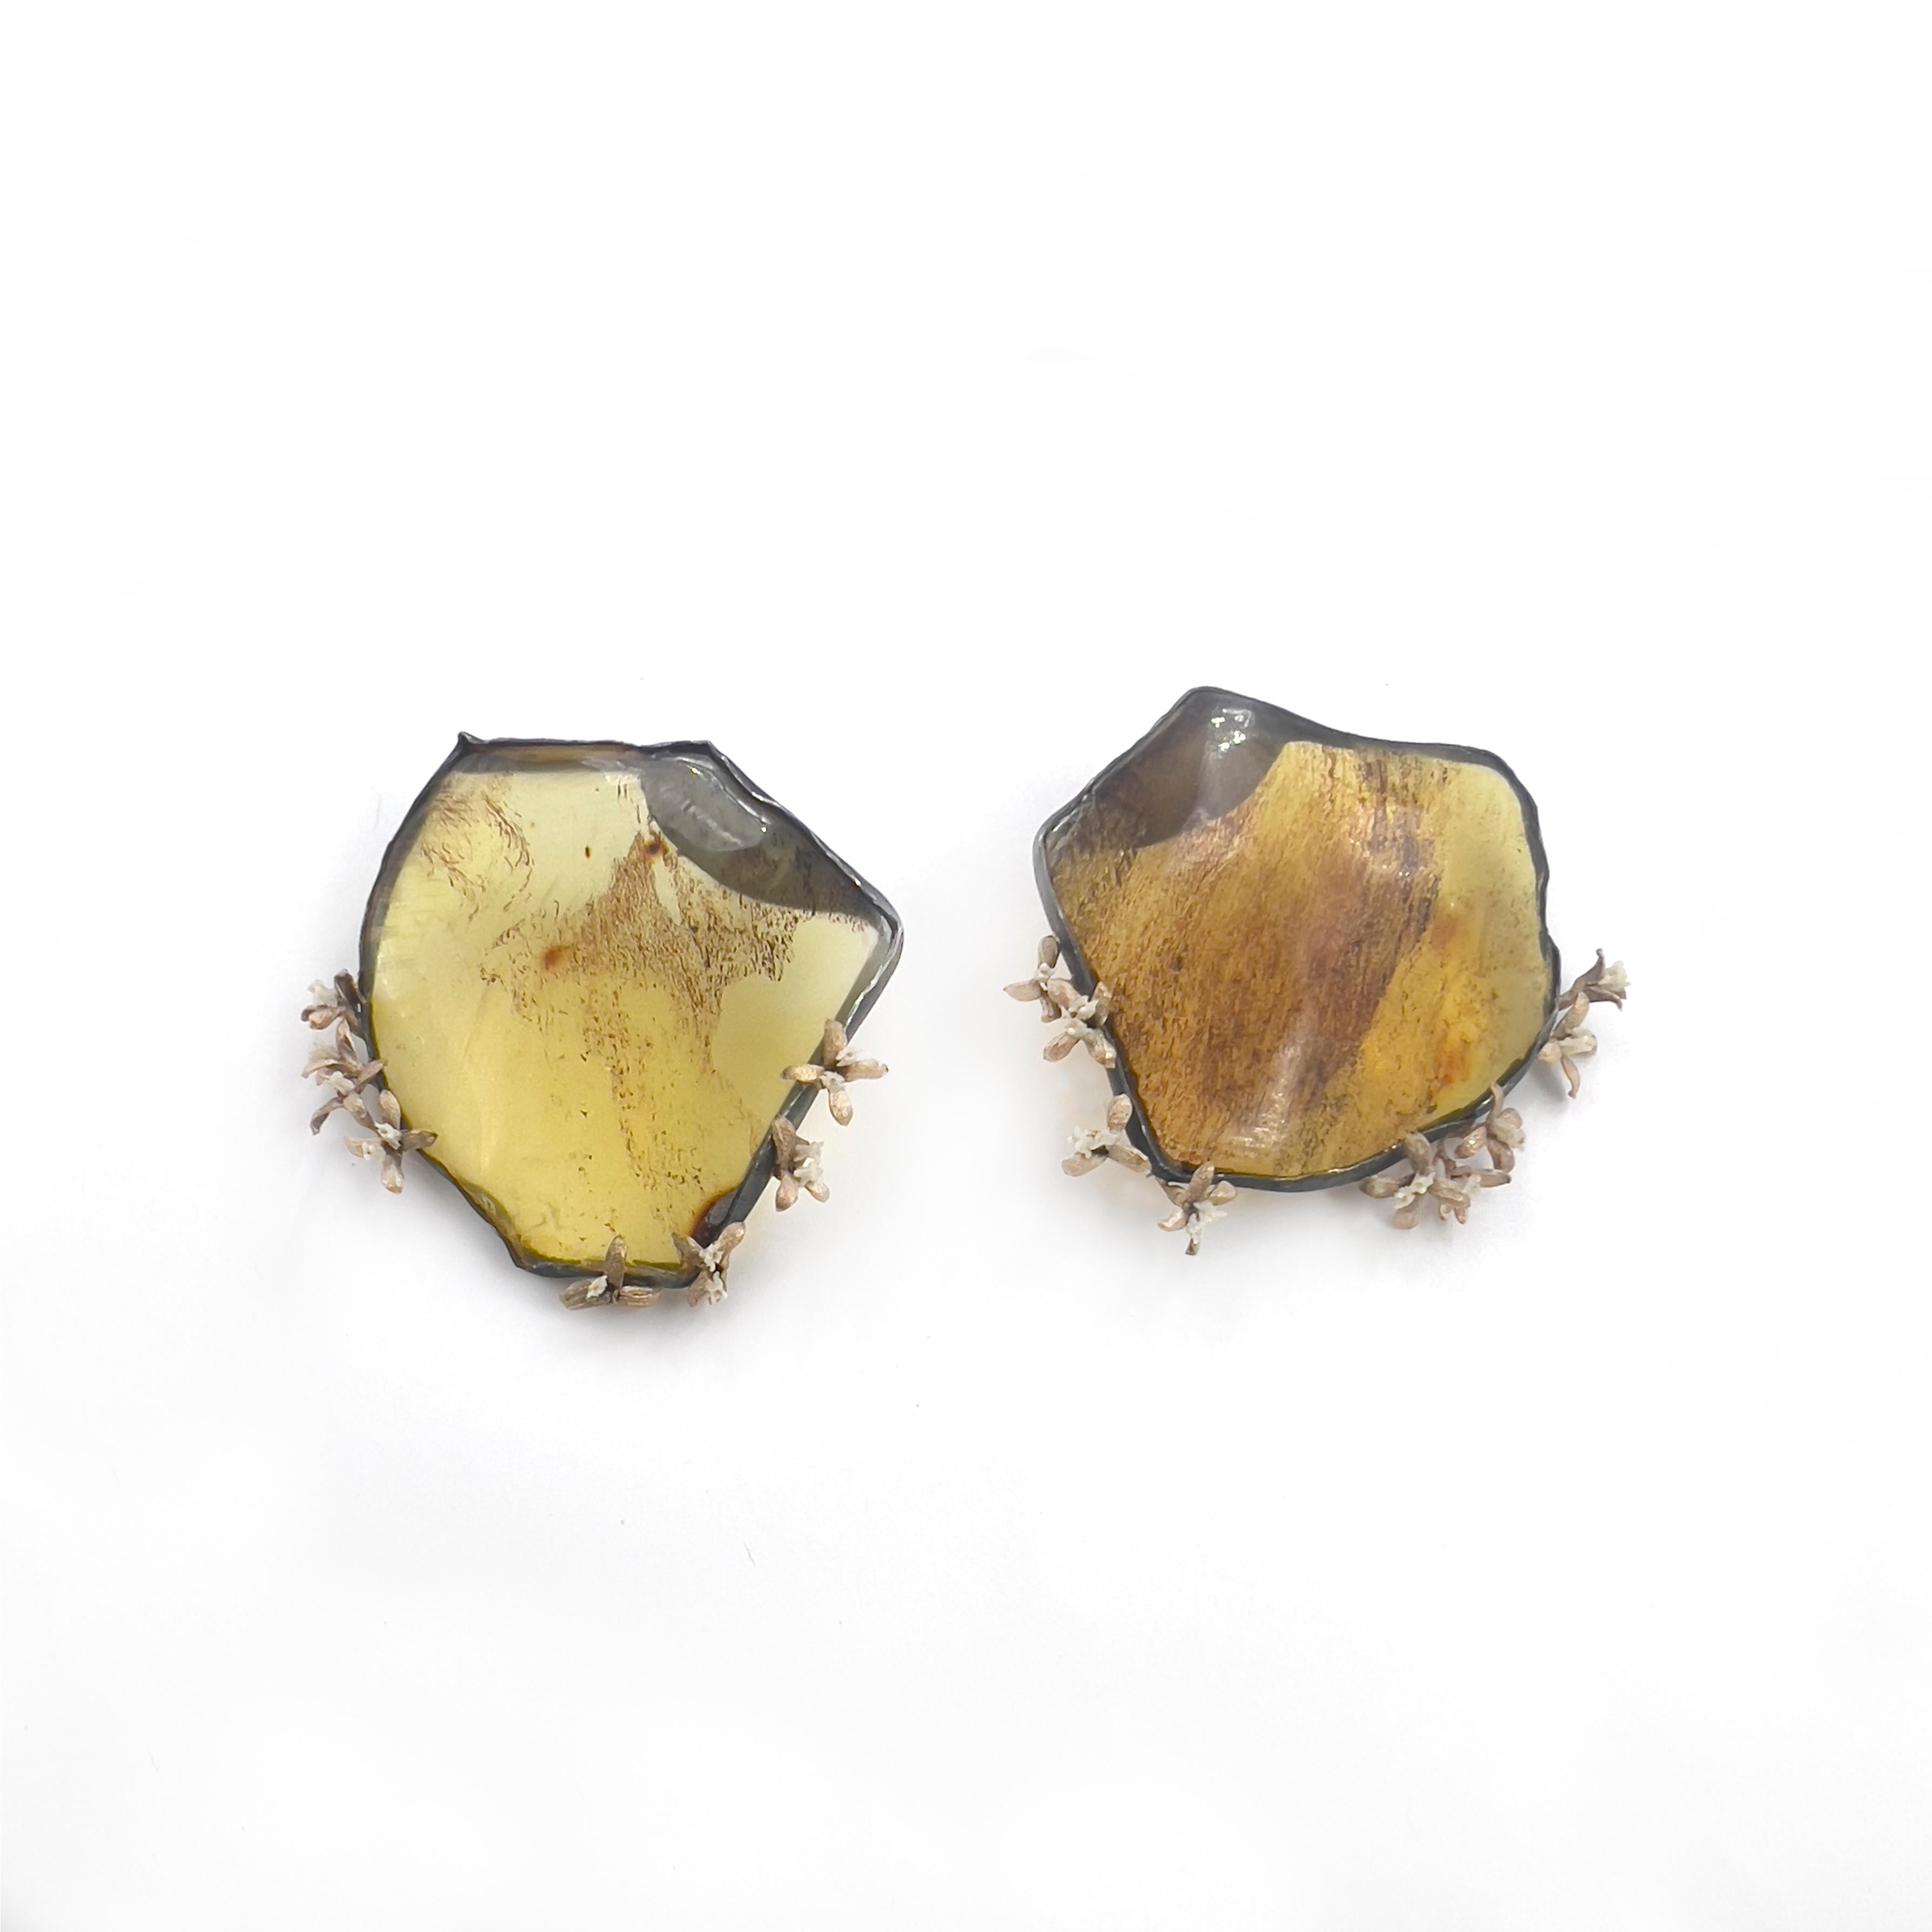 Ces boucles d'oreilles uniques associent la chaleur de l'ambre à une touche délicate de vertèbres de serpent. Chaque paire est méticuleusement fabriquée avec de l'or jaune 14k et de l'argent recyclés, garantissant à la fois l'élégance et la